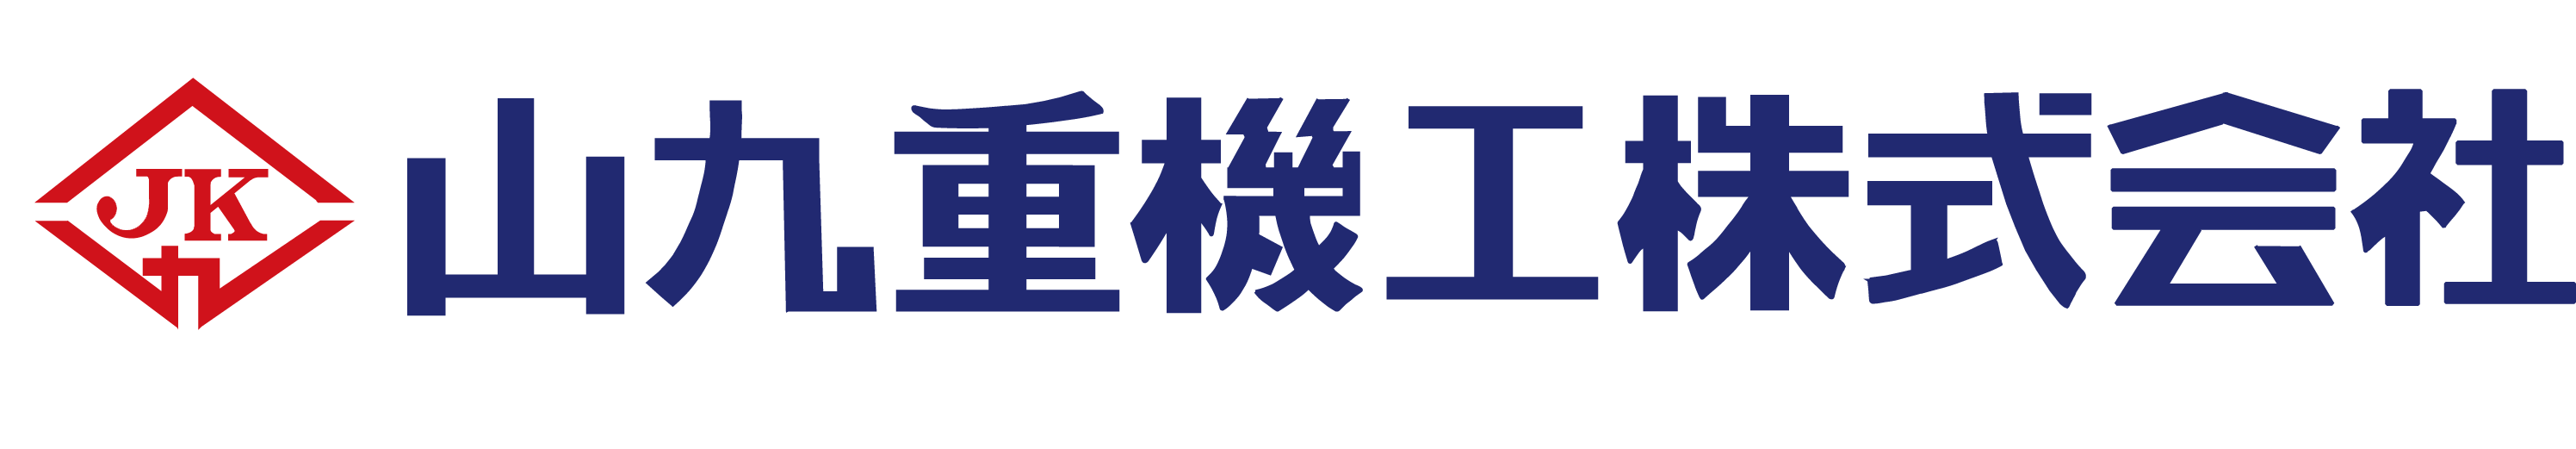 山九重機工株式会社ロゴ